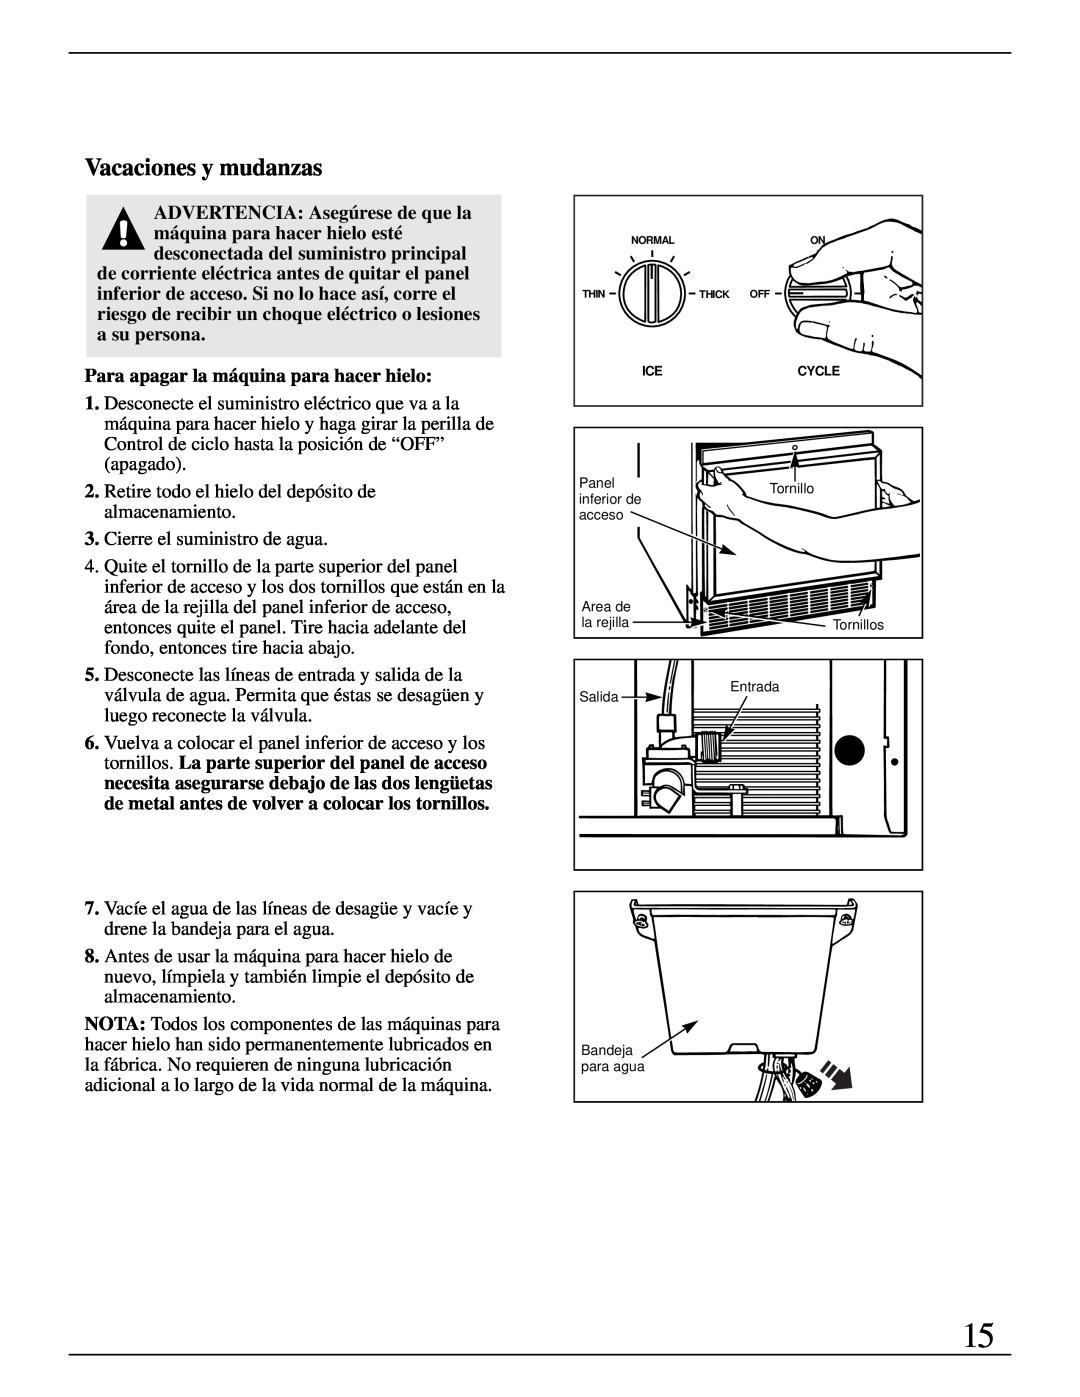 GE Monogram ZDIB50 installation instructions Vacaciones y mudanzas, Para apagar la máquina para hacer hielo 